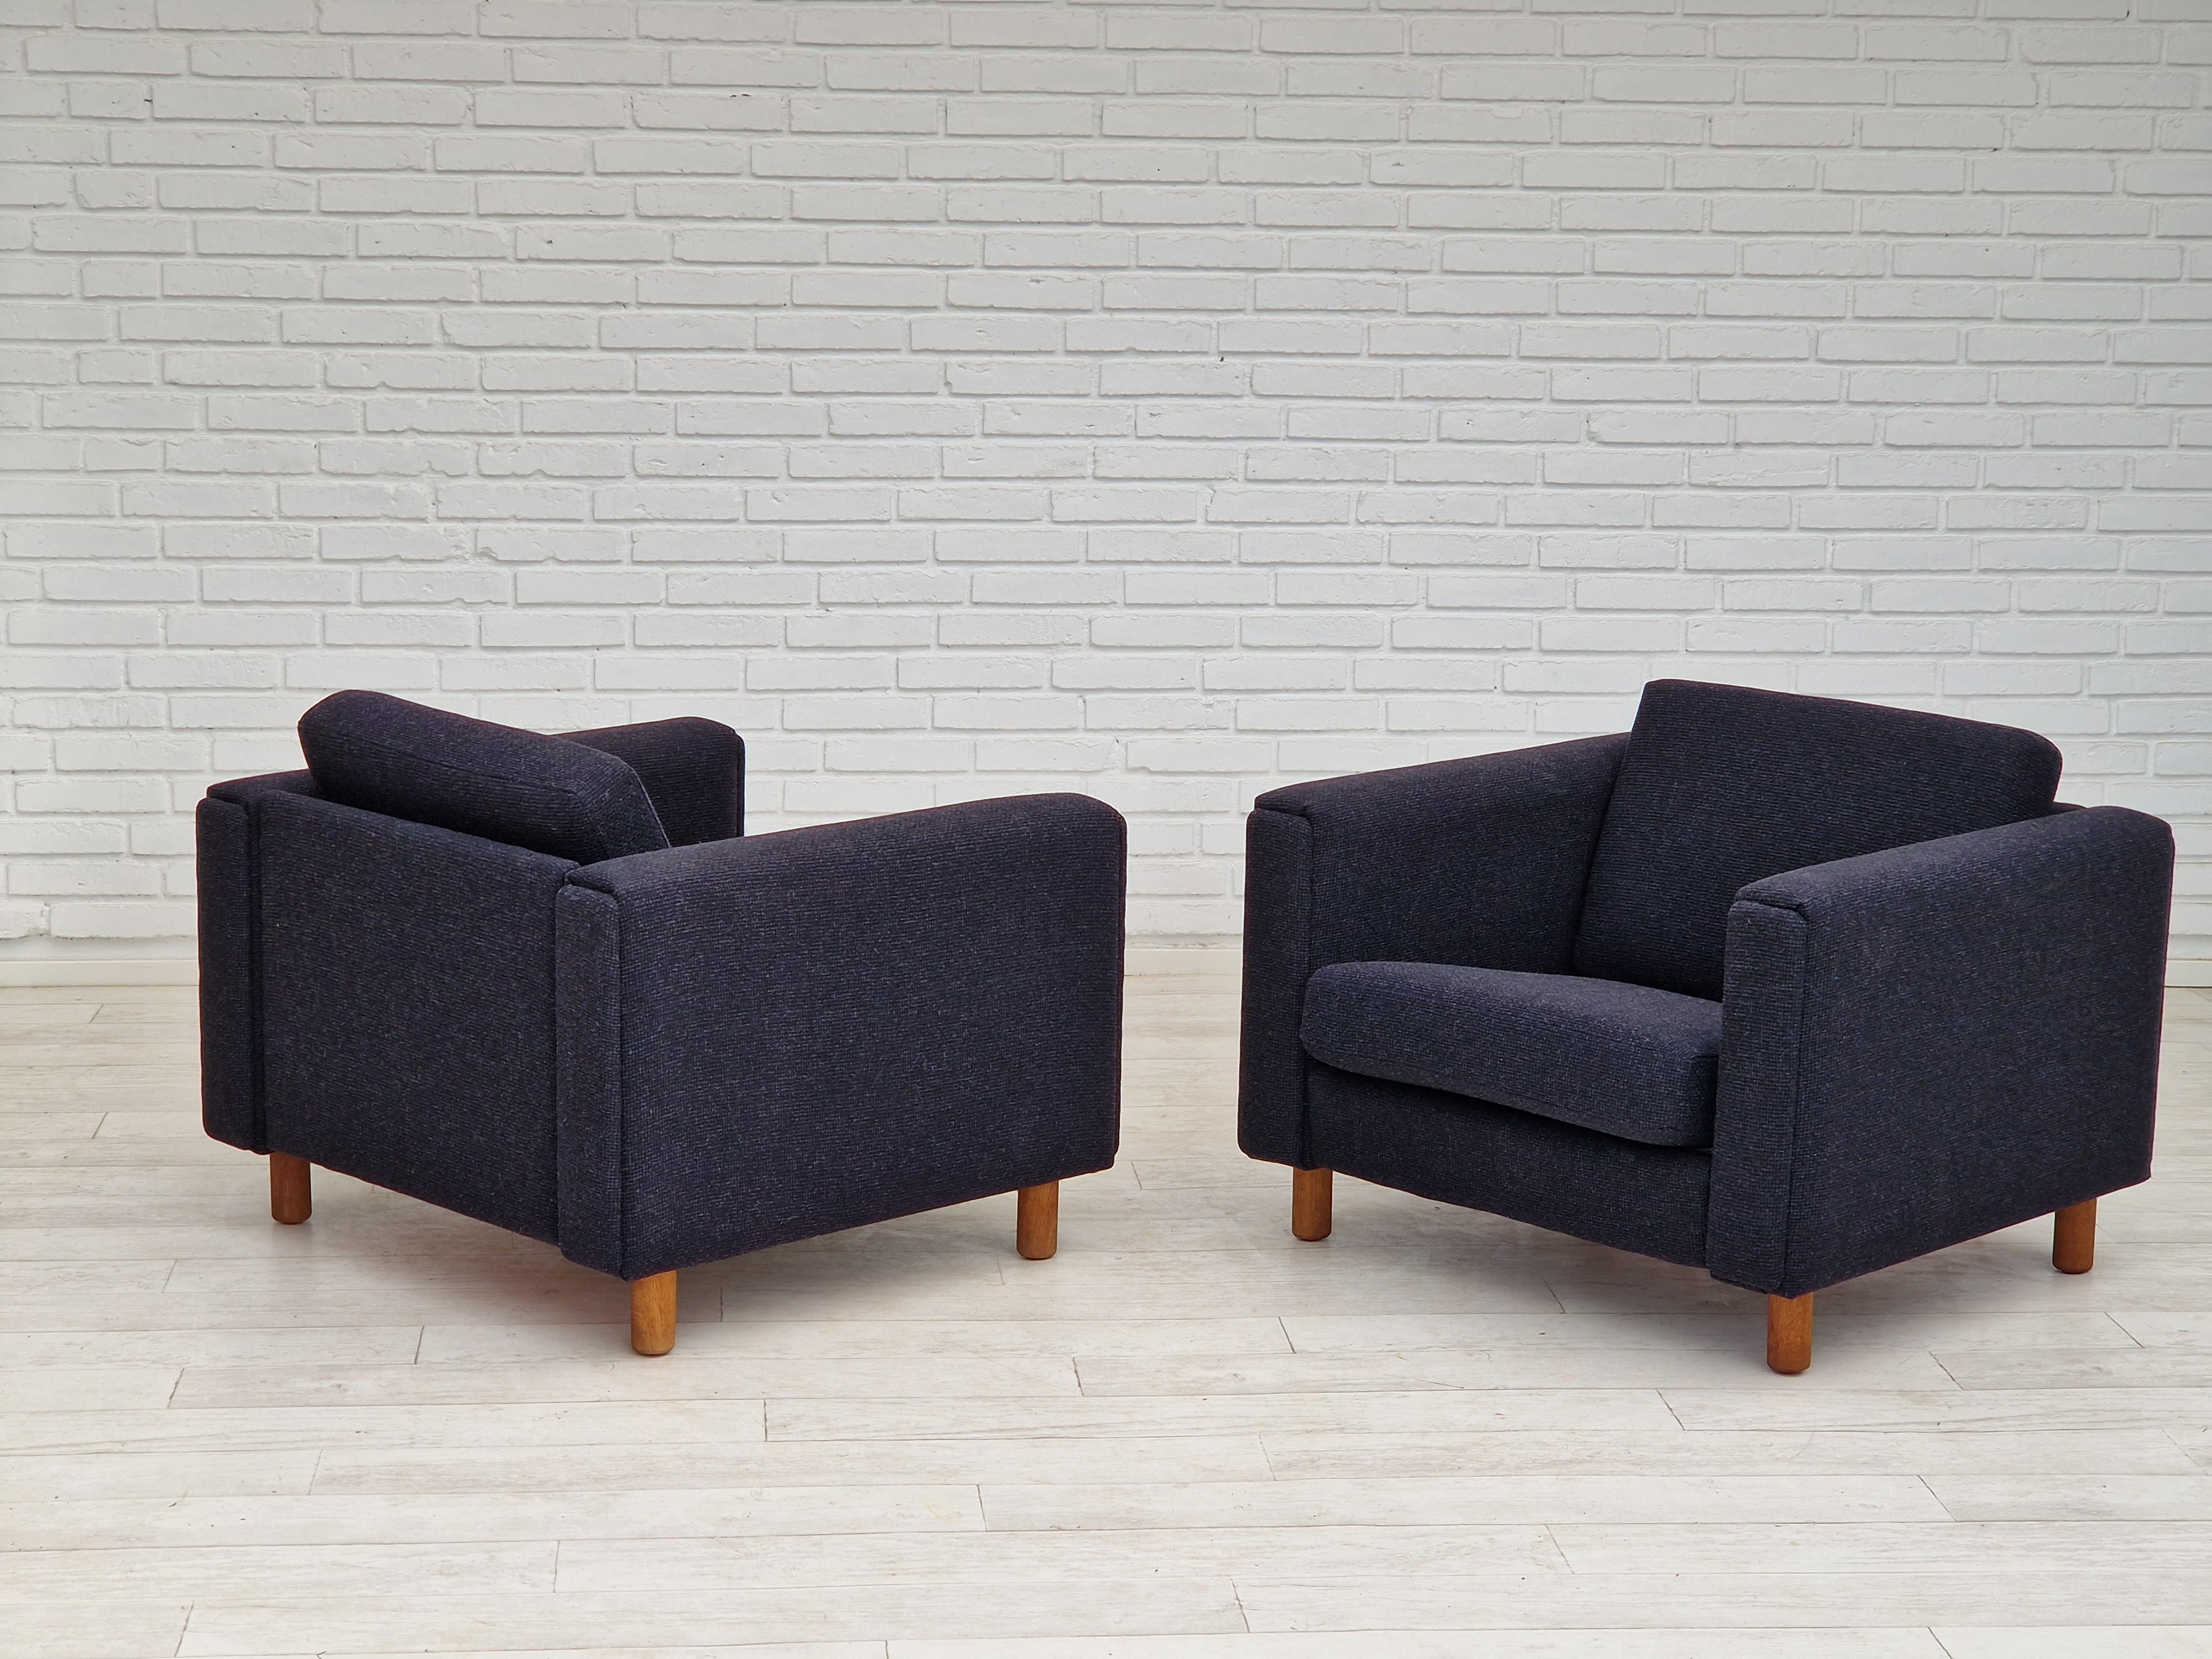 1970s, Danish design by H.J. Wegner, reupholstered armchair, model GE300. For Sale 1